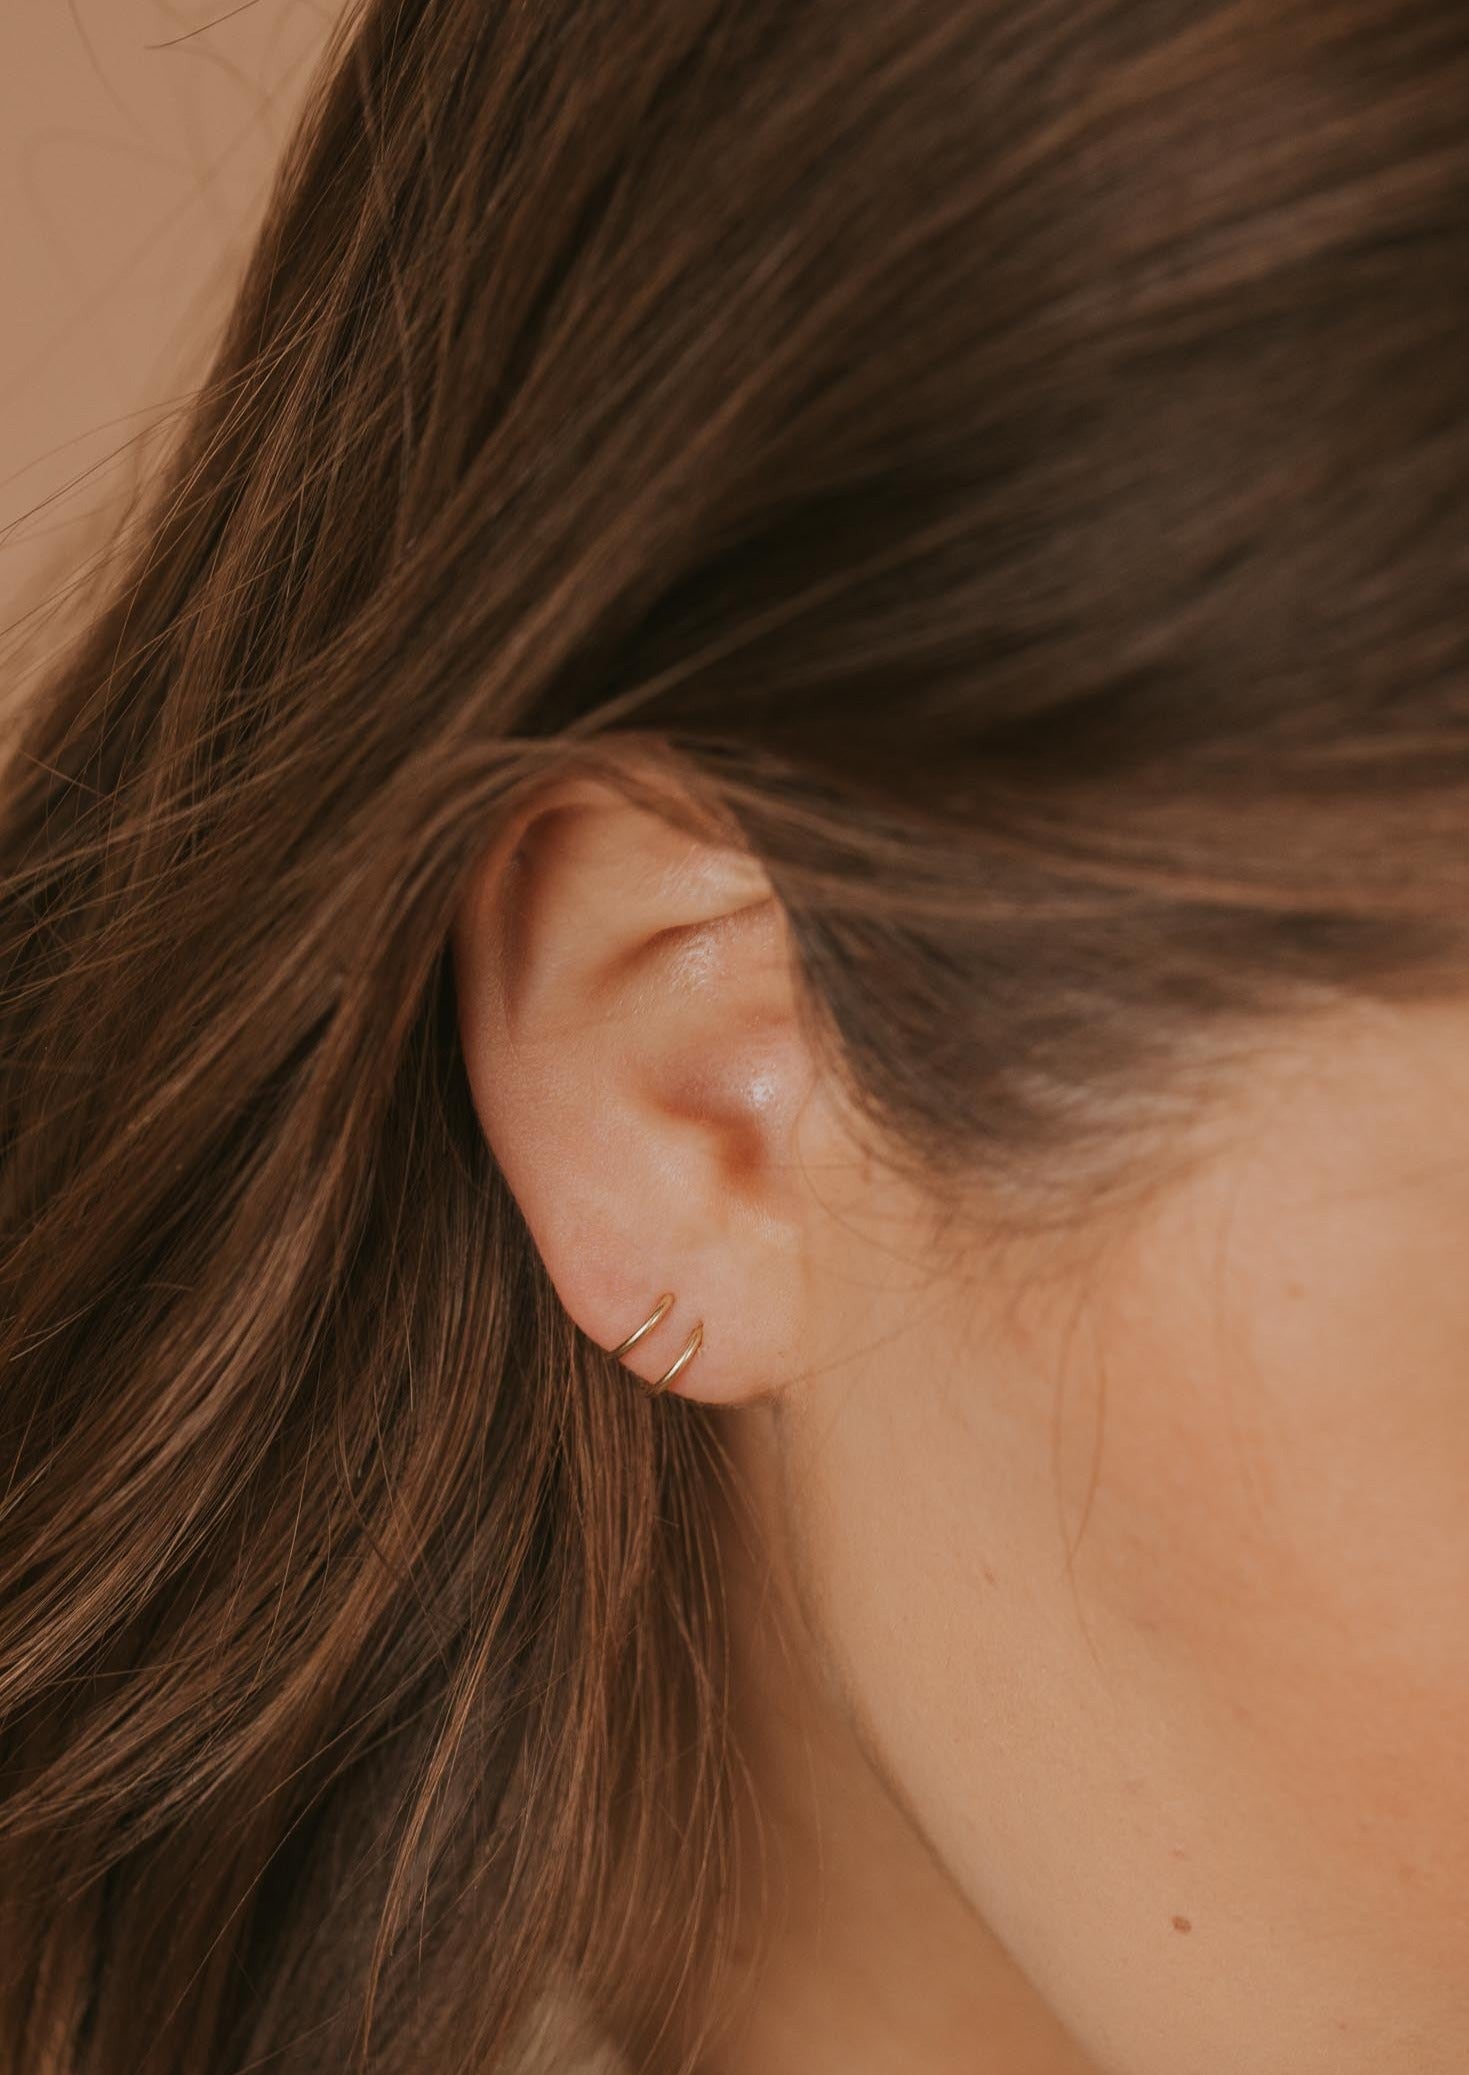 Buy Tiny Hoop Earring Flat - Choose Your Diameter, Gauge, Metal, Hoops For  Men & Women Online | Mystic Moon Shop